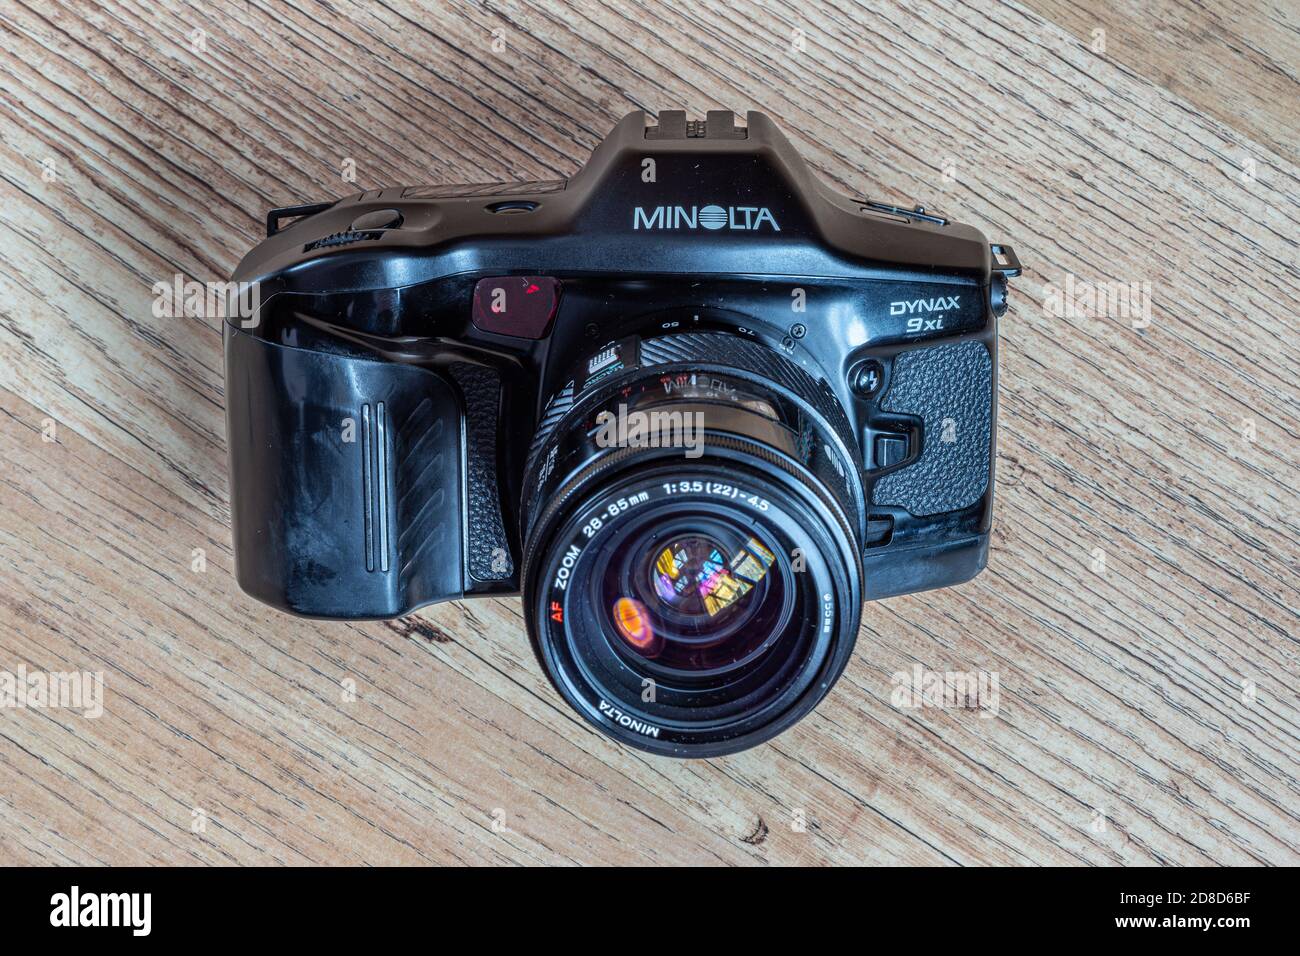 Minolta Classic fotocamera reflex autofocus dagli anni '80 al anni '90 Foto Stock